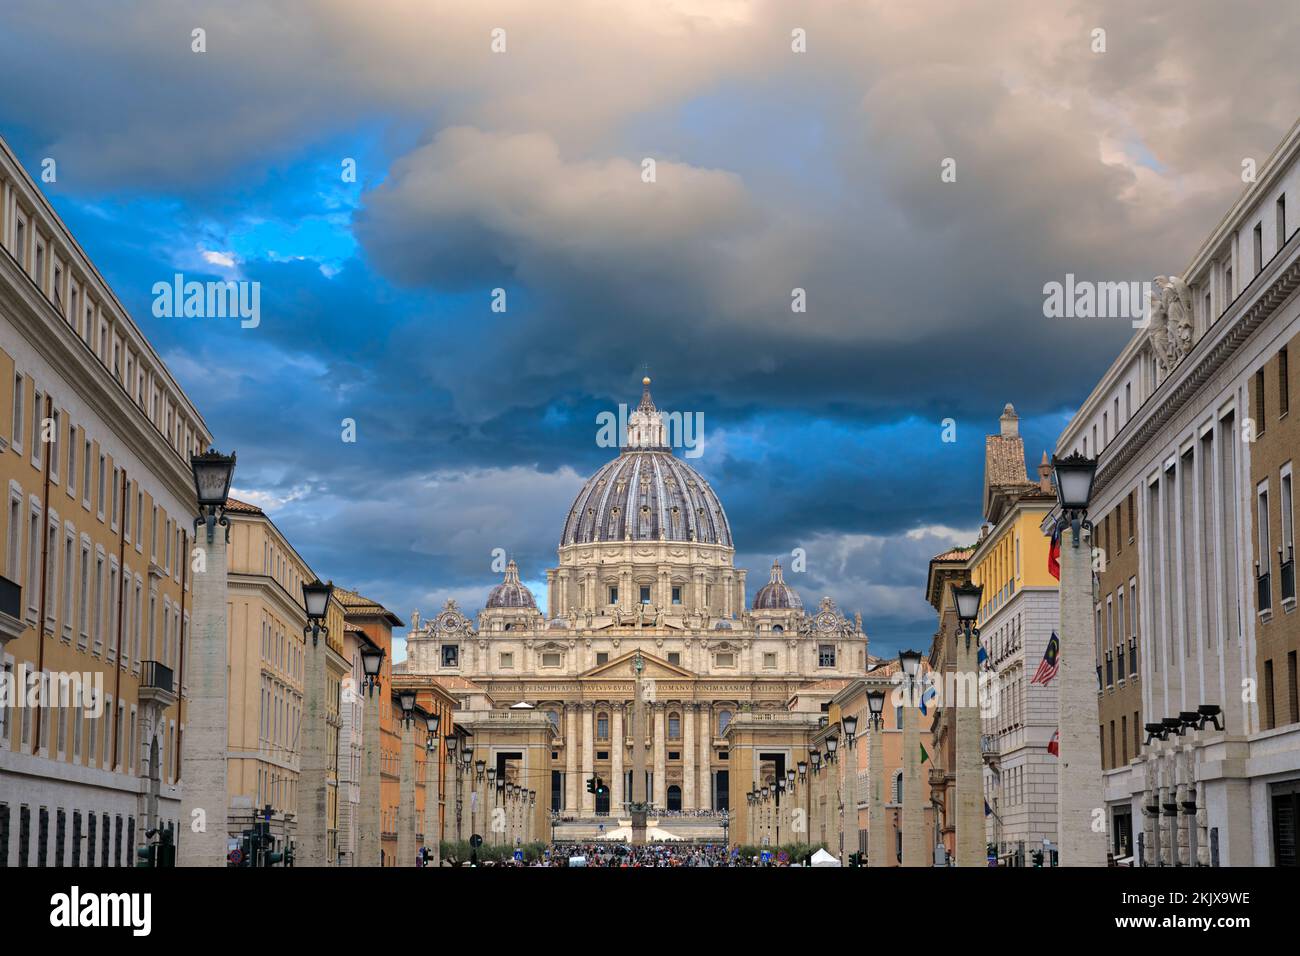 Vue sur la basilique Saint-Pierre de Rome depuis la via della Conciliazione, Italie. Banque D'Images